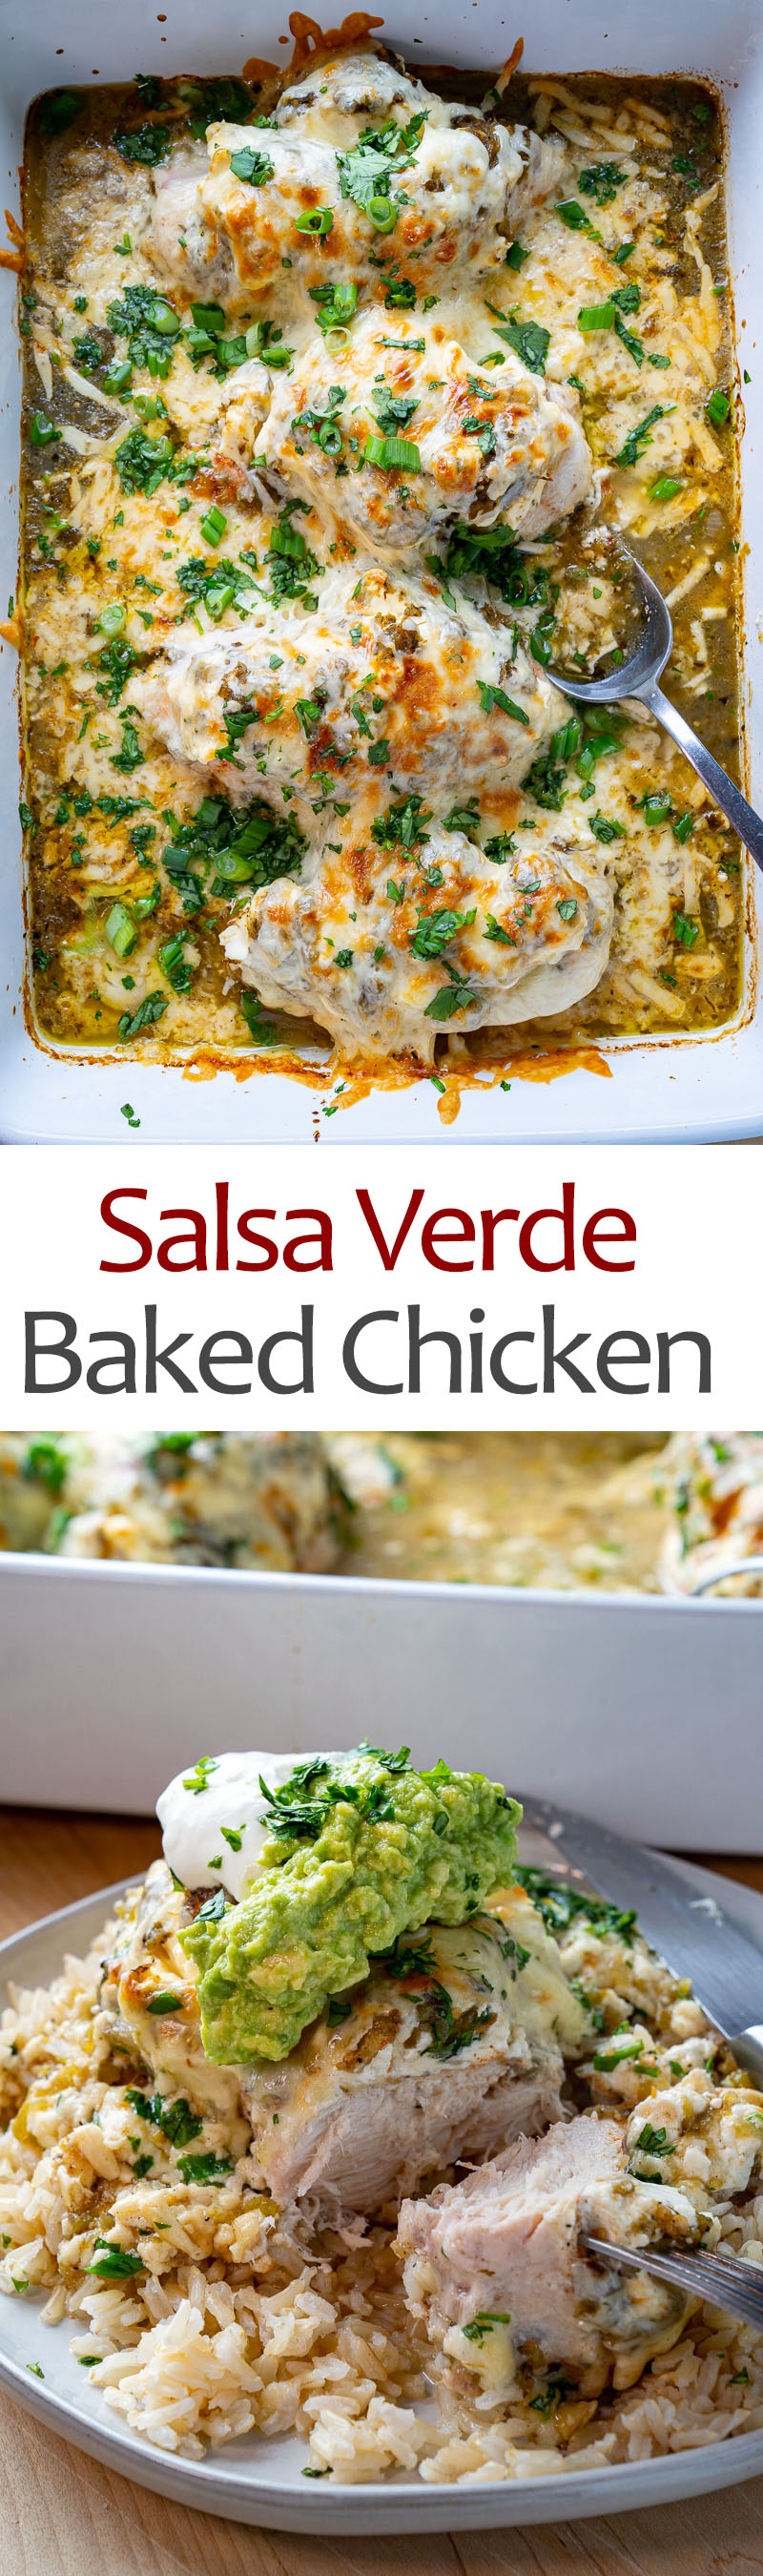 Salsa Verde Baked Chicken